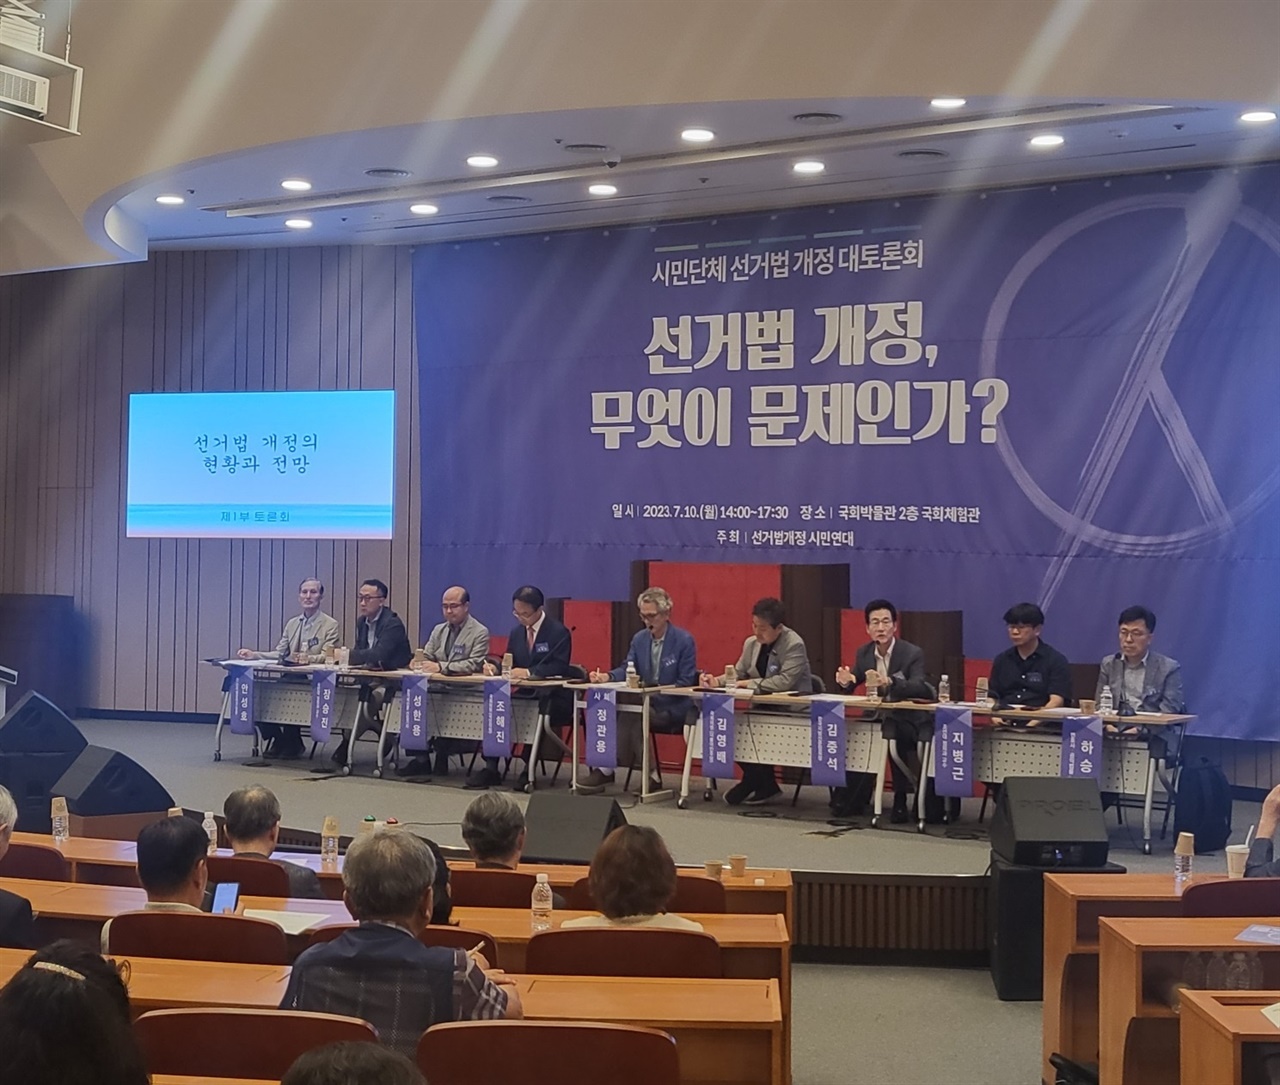 10일 서울 영등포구 국회박물관에서 '선거법 개정, 무엇이 문제인가?' 시민단체 선거법 개정 대토론회가 열렸다.